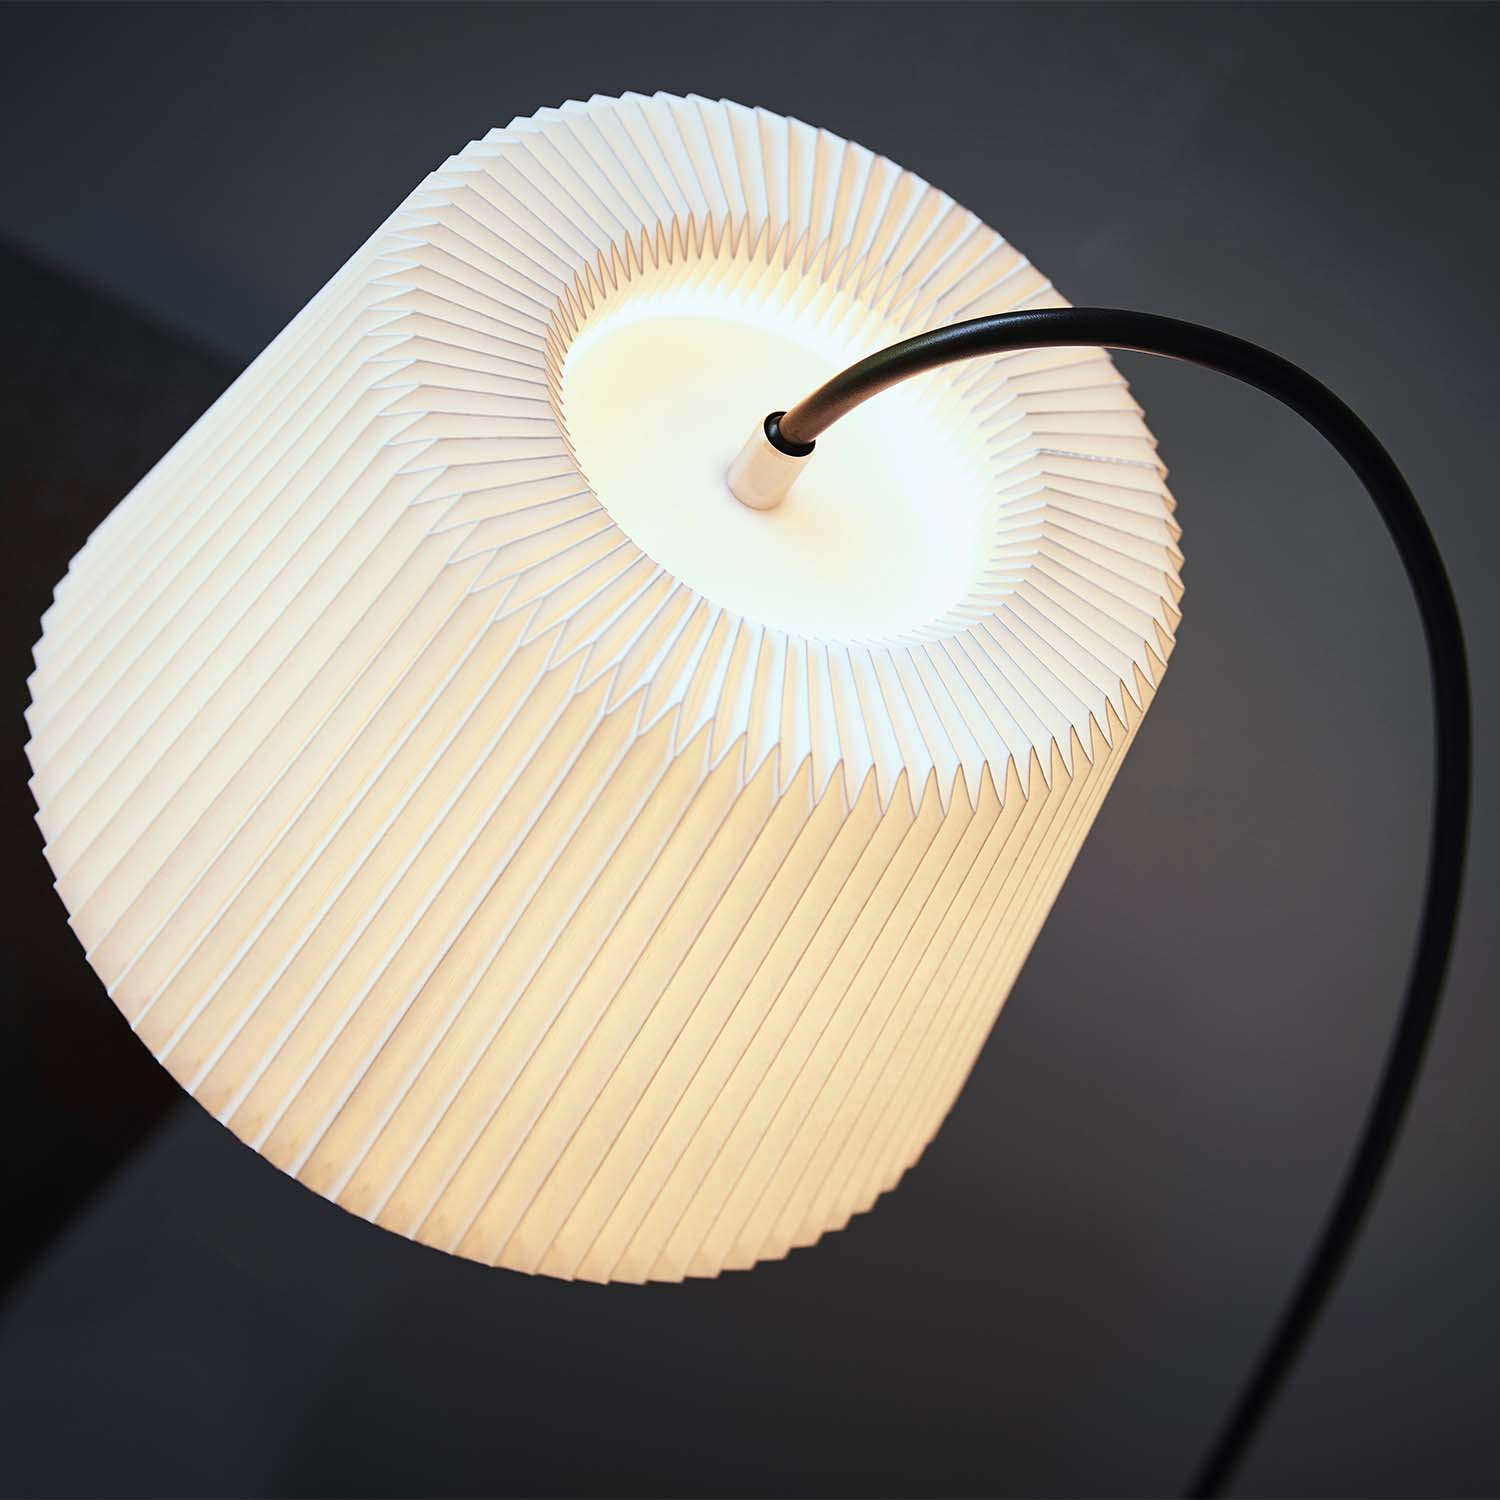 SNOWDROP – Handgefertigte Stehlampe mit Angelrute aus plissiertem Papier